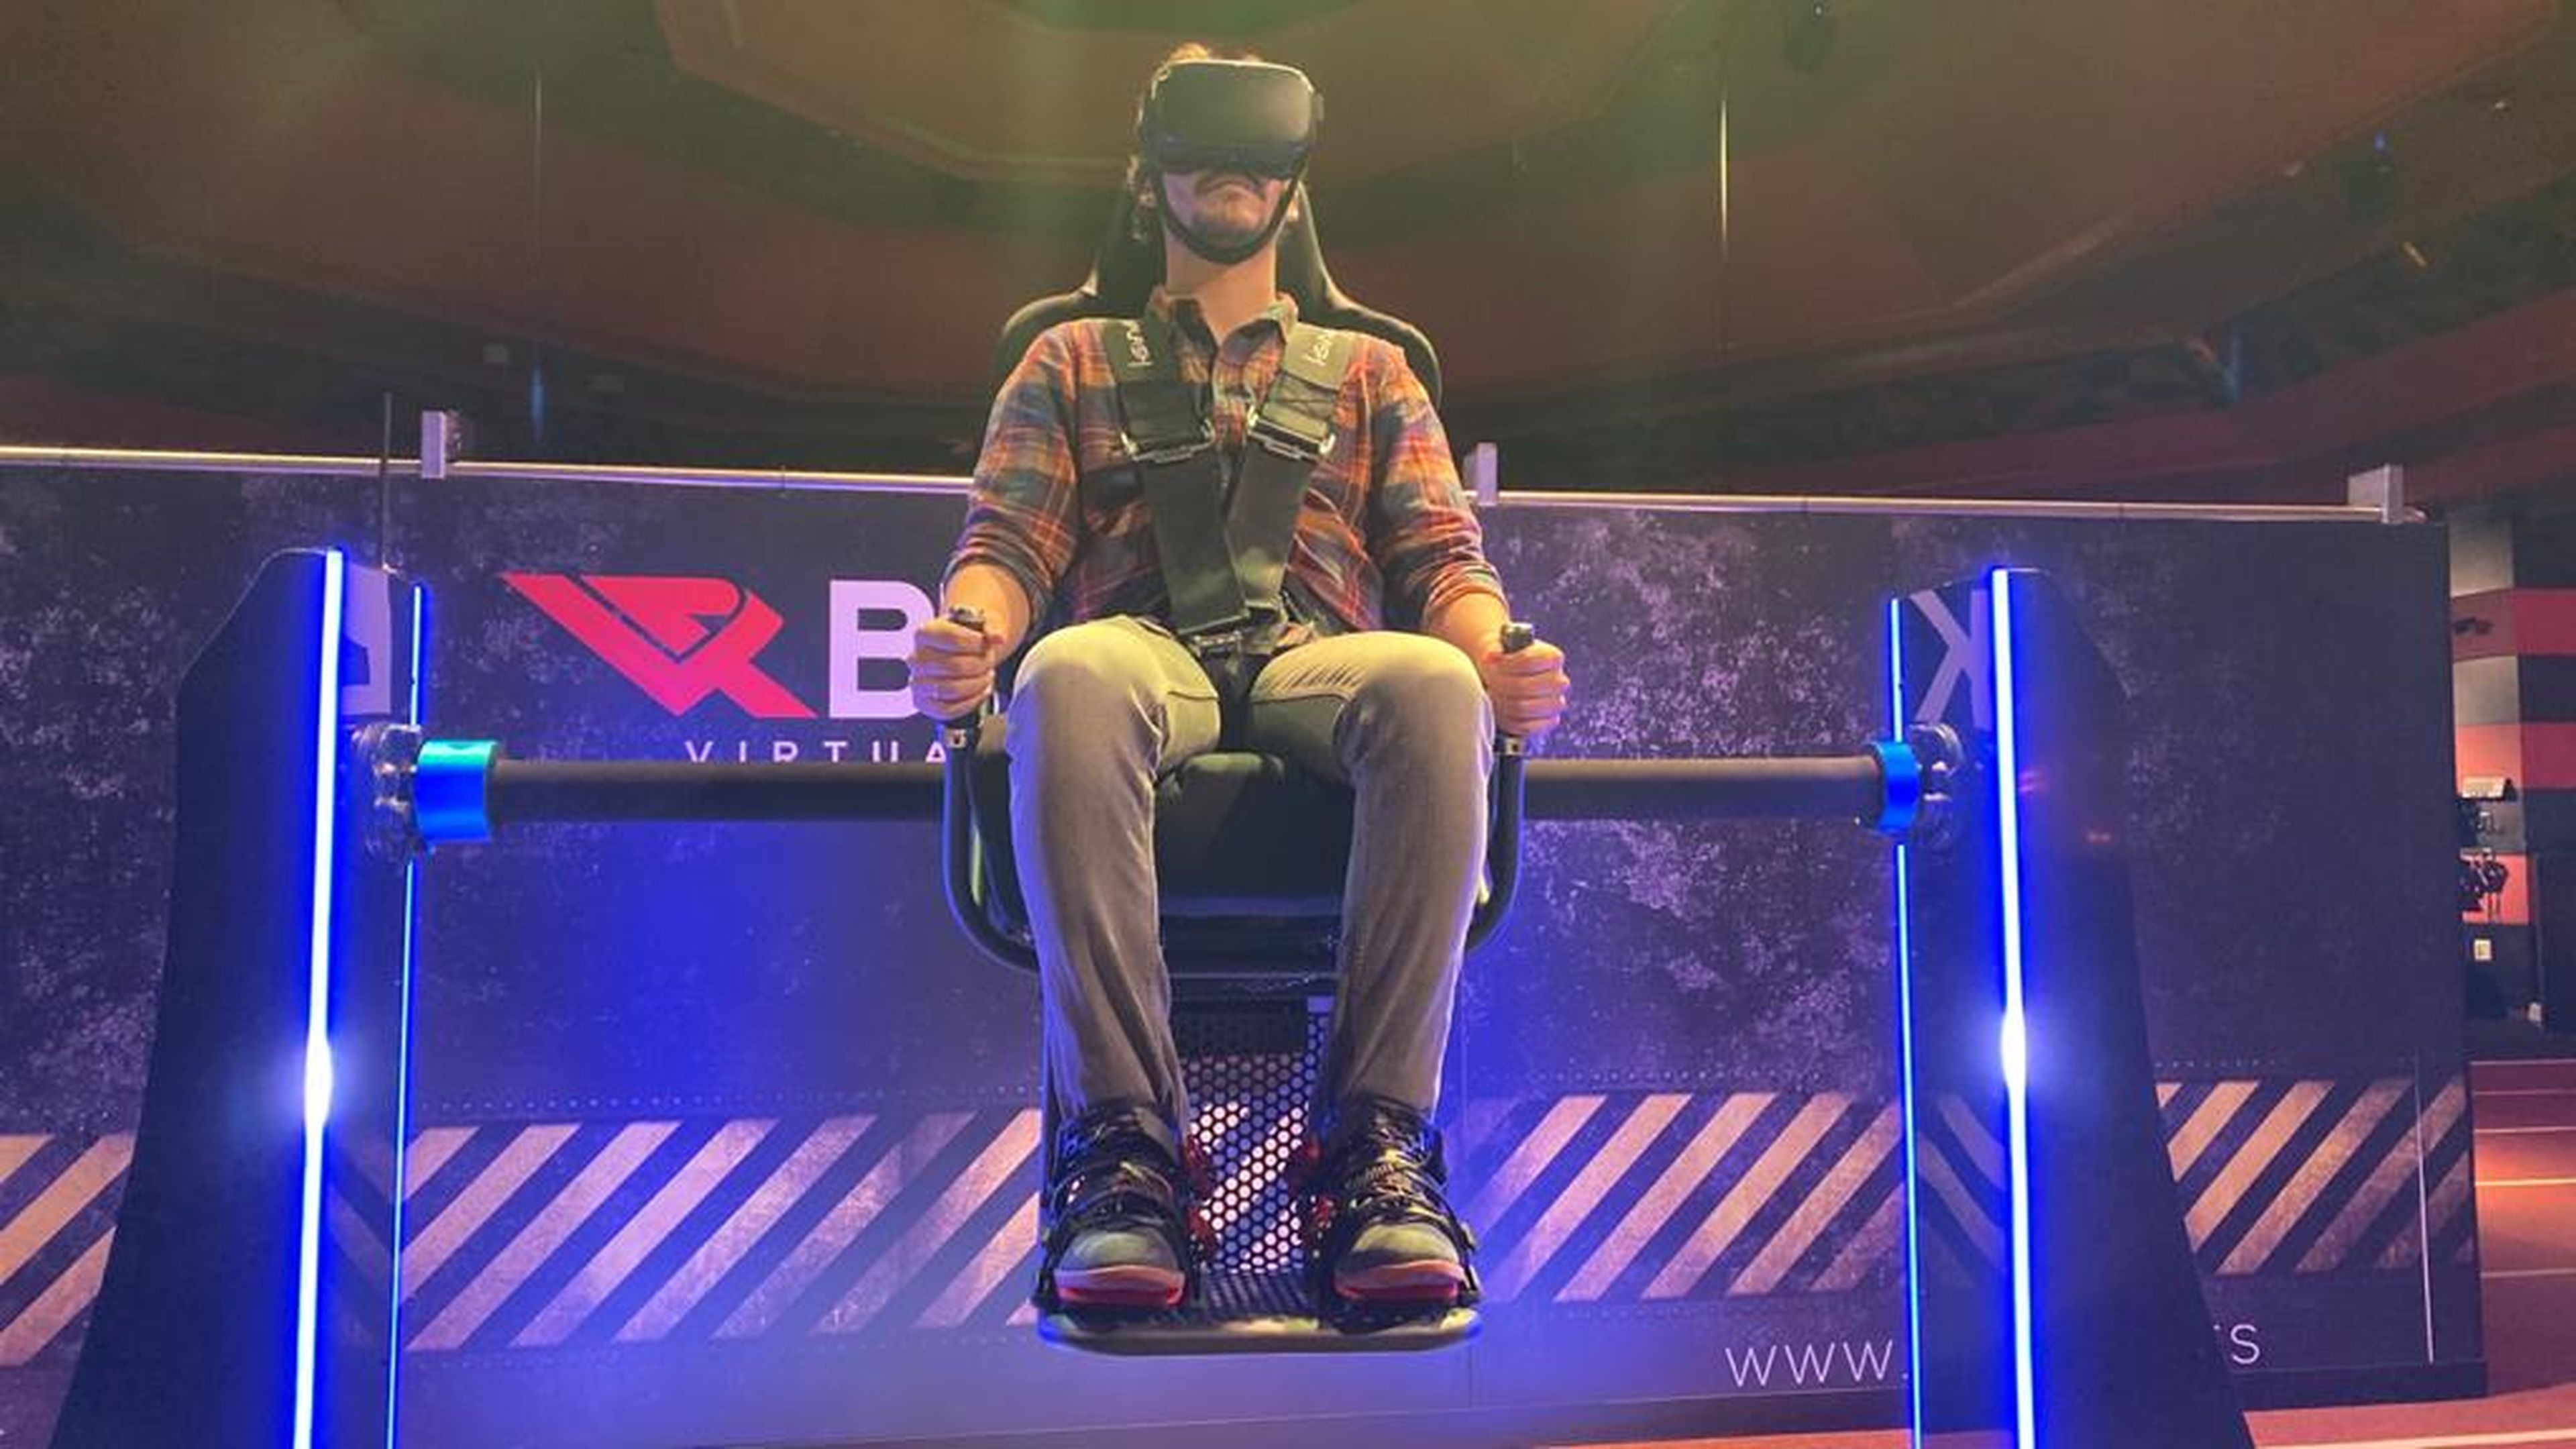 Además de los juegos de realidad virtual, también hay una experiencia 360º en una silla giratoria, pero me pareció una experiencia menos satisfactoria